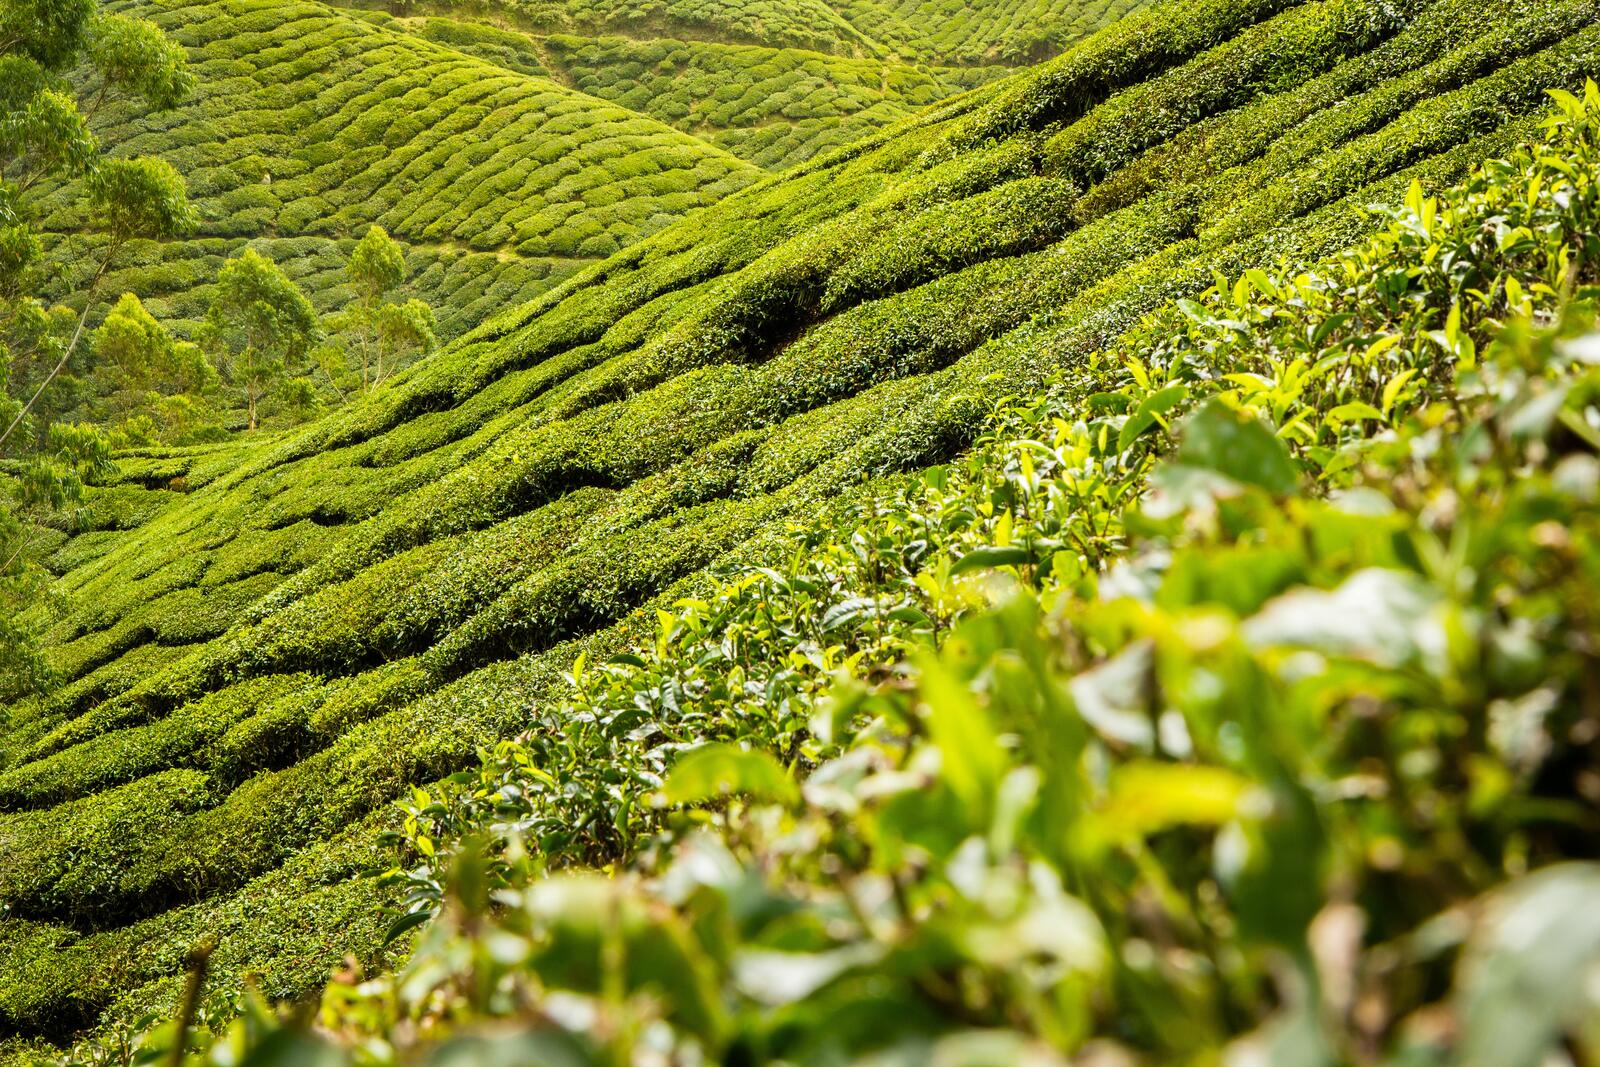 Бесплатное фото Поля с зеленым чаем в юго-восточной азии